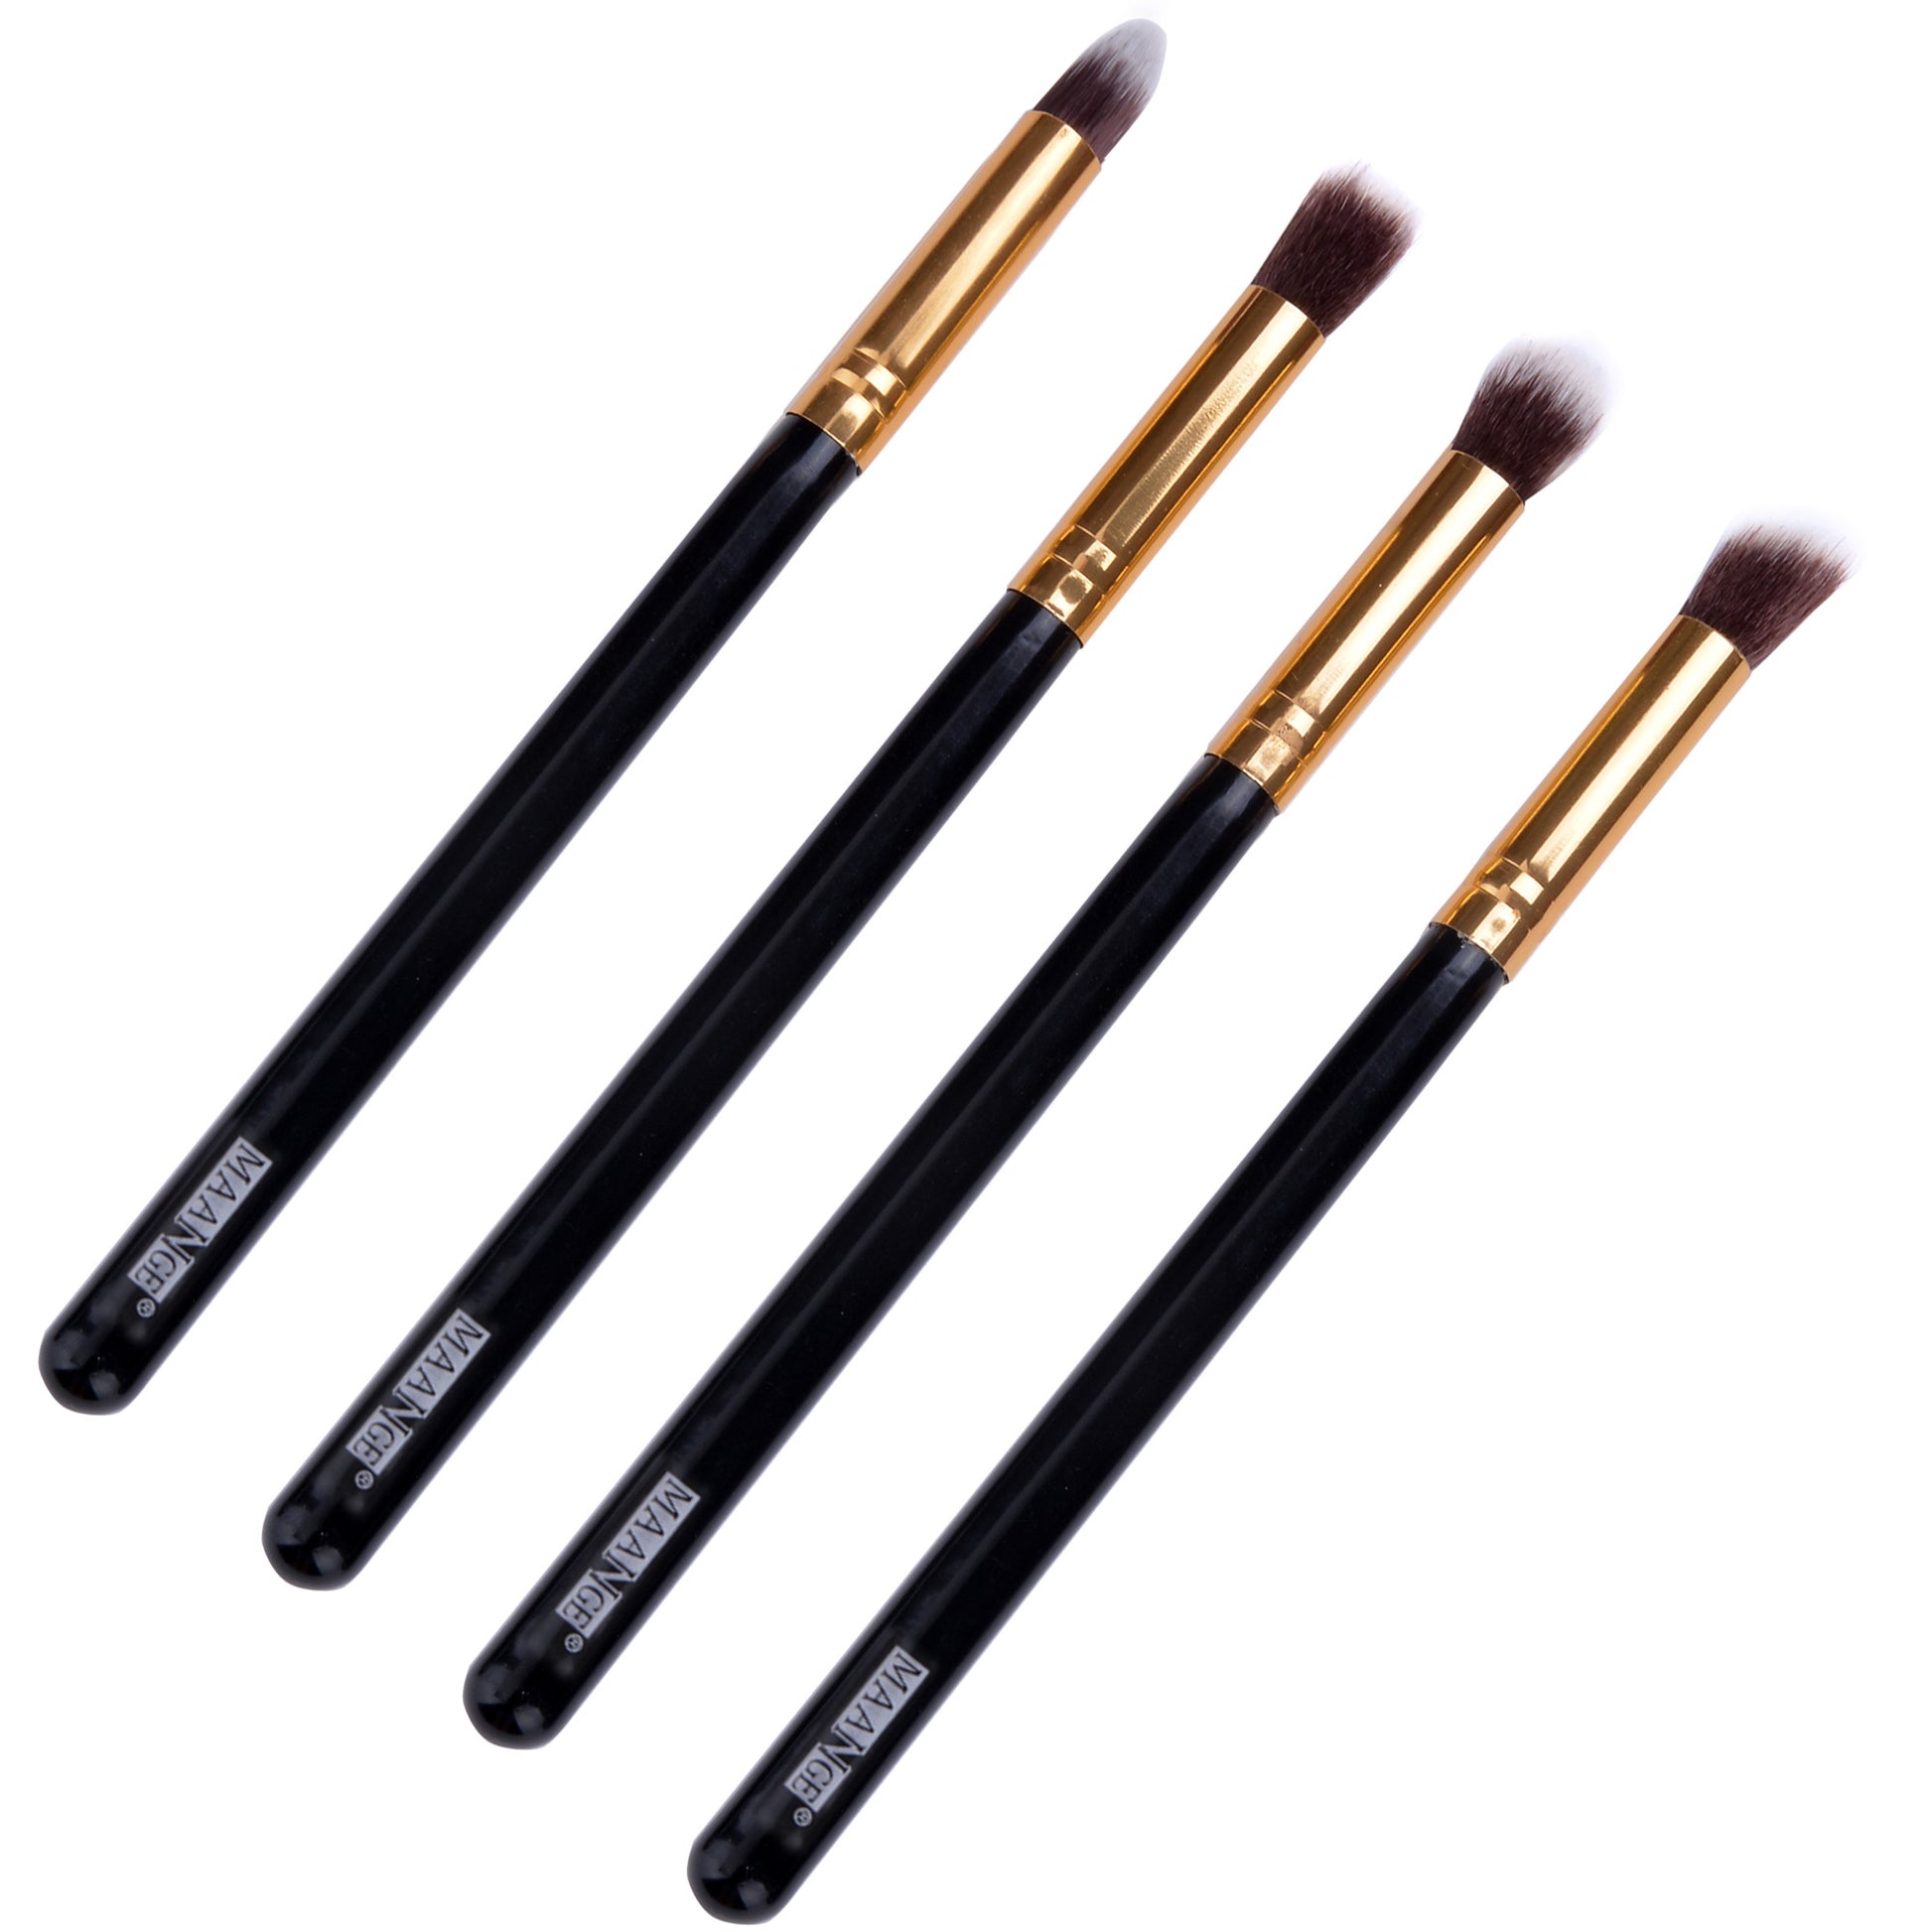 Kabuki Set Kits 4pcs Makeup brush cosmetics Foundation Eyeshadow brushes - Oh Yours Fashion - 7